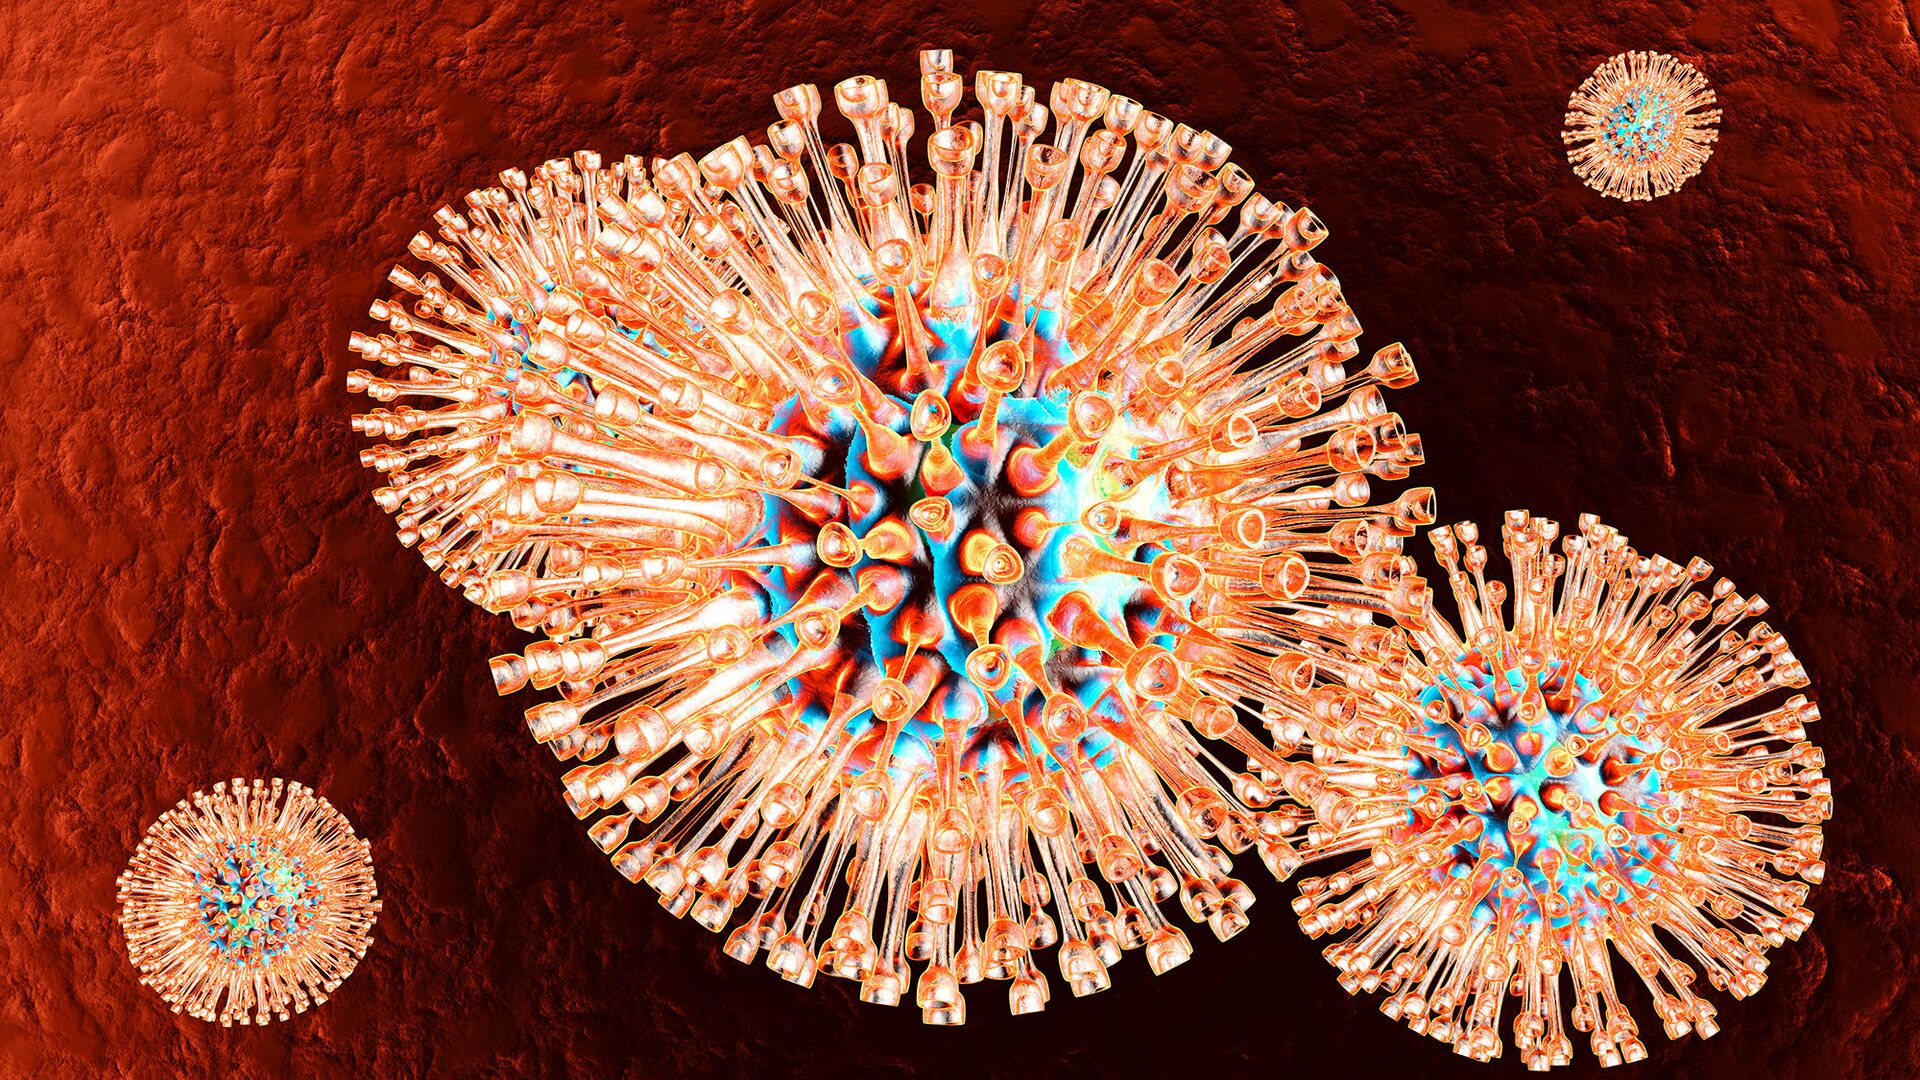 COVID-19 против рака. Когда иммунитет сам убивает опухоль